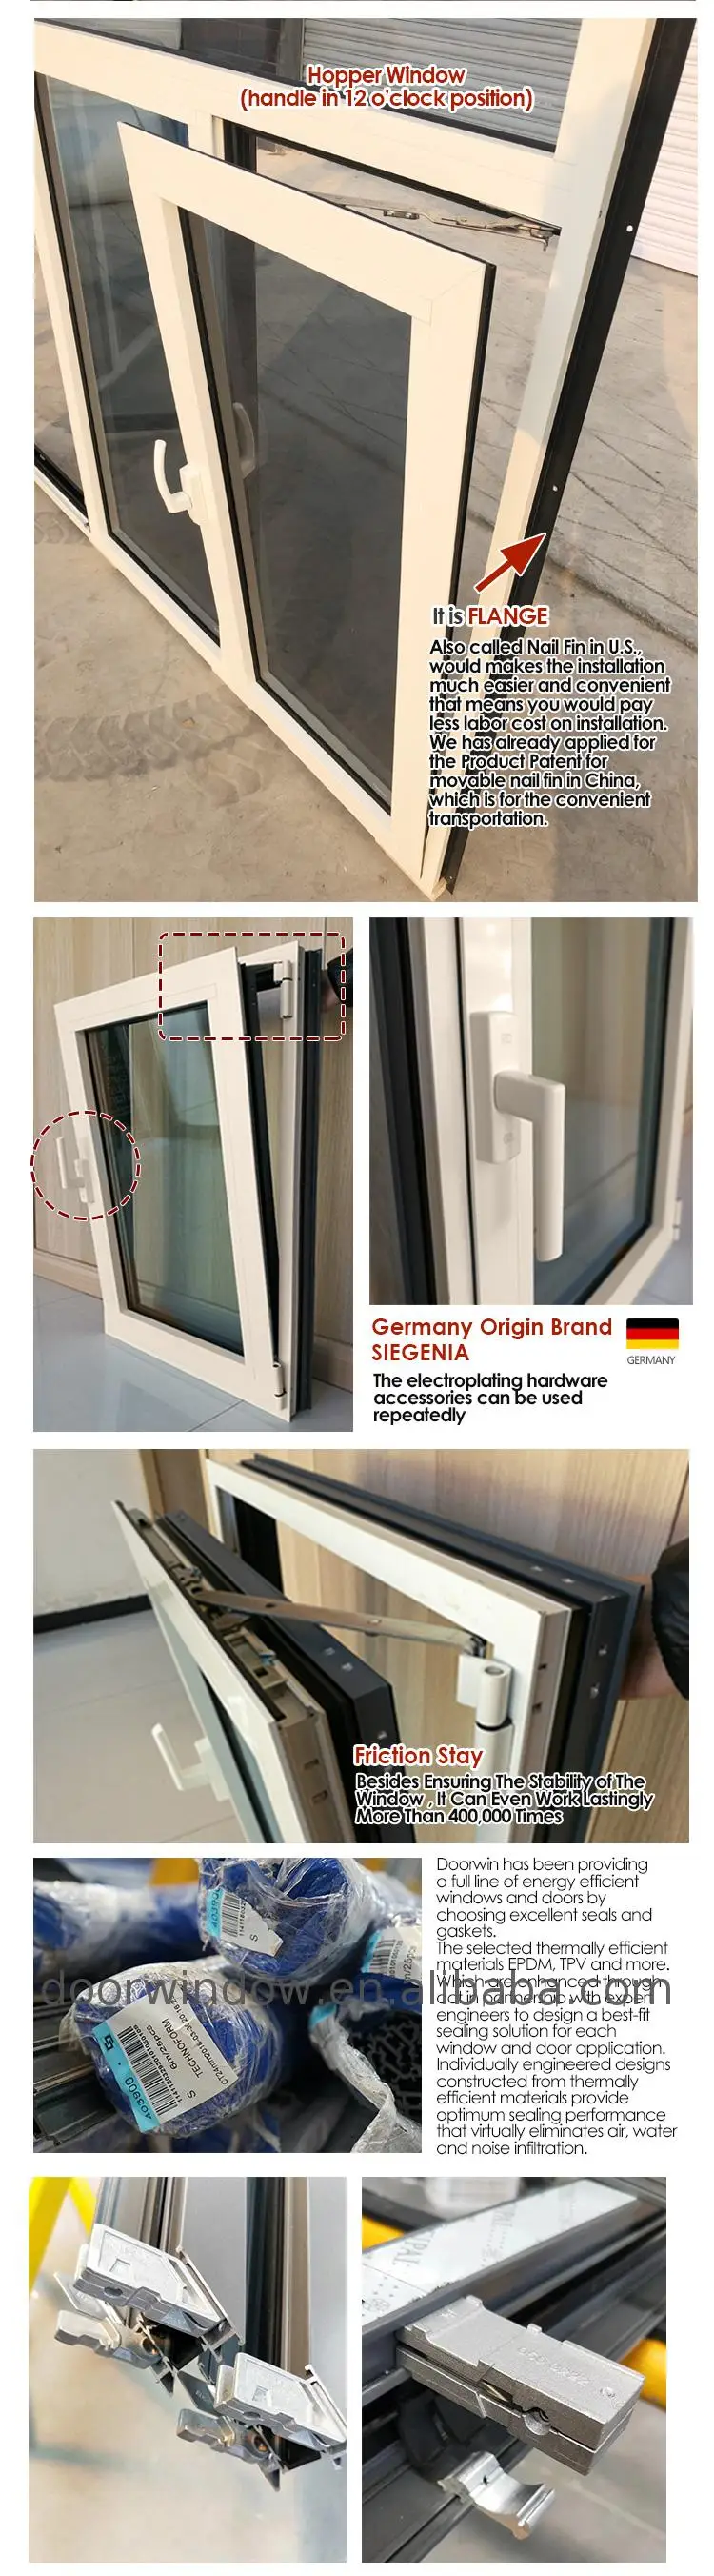 Windows doors window design casement